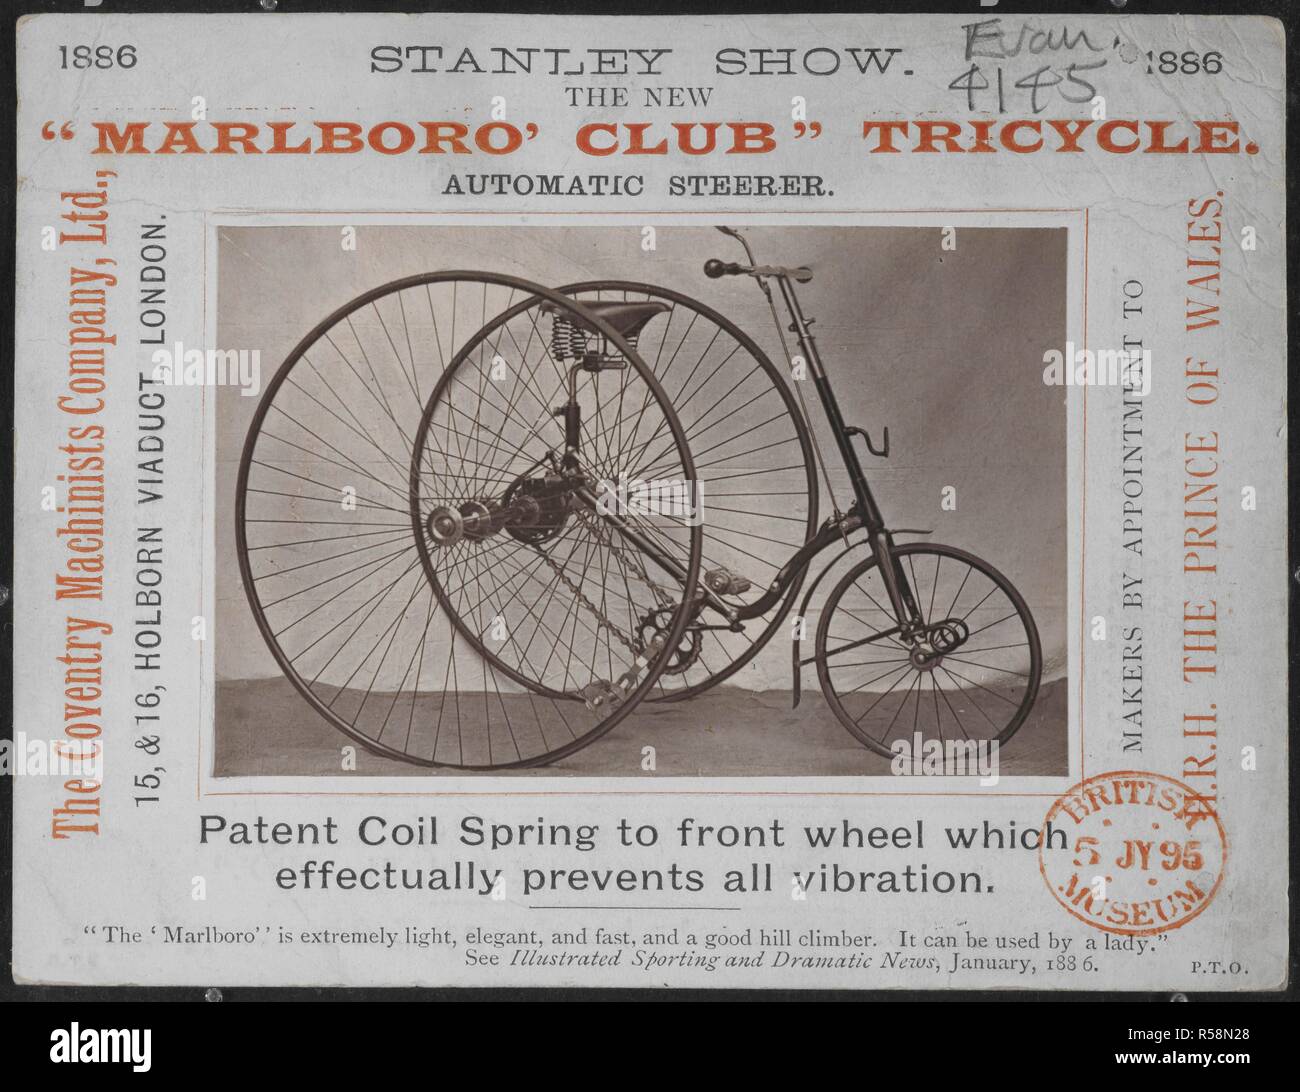 Stanley Show. El nuevo 'Marlboro' Club", el triciclo. Tubo de dirección  automática. El Coventry maquinistas Company, Ltd., 15 y 16, el Viaducto de  Holborn, Londres. Â€¦ ''Marlboro' es extremadamente ligero, elegante y